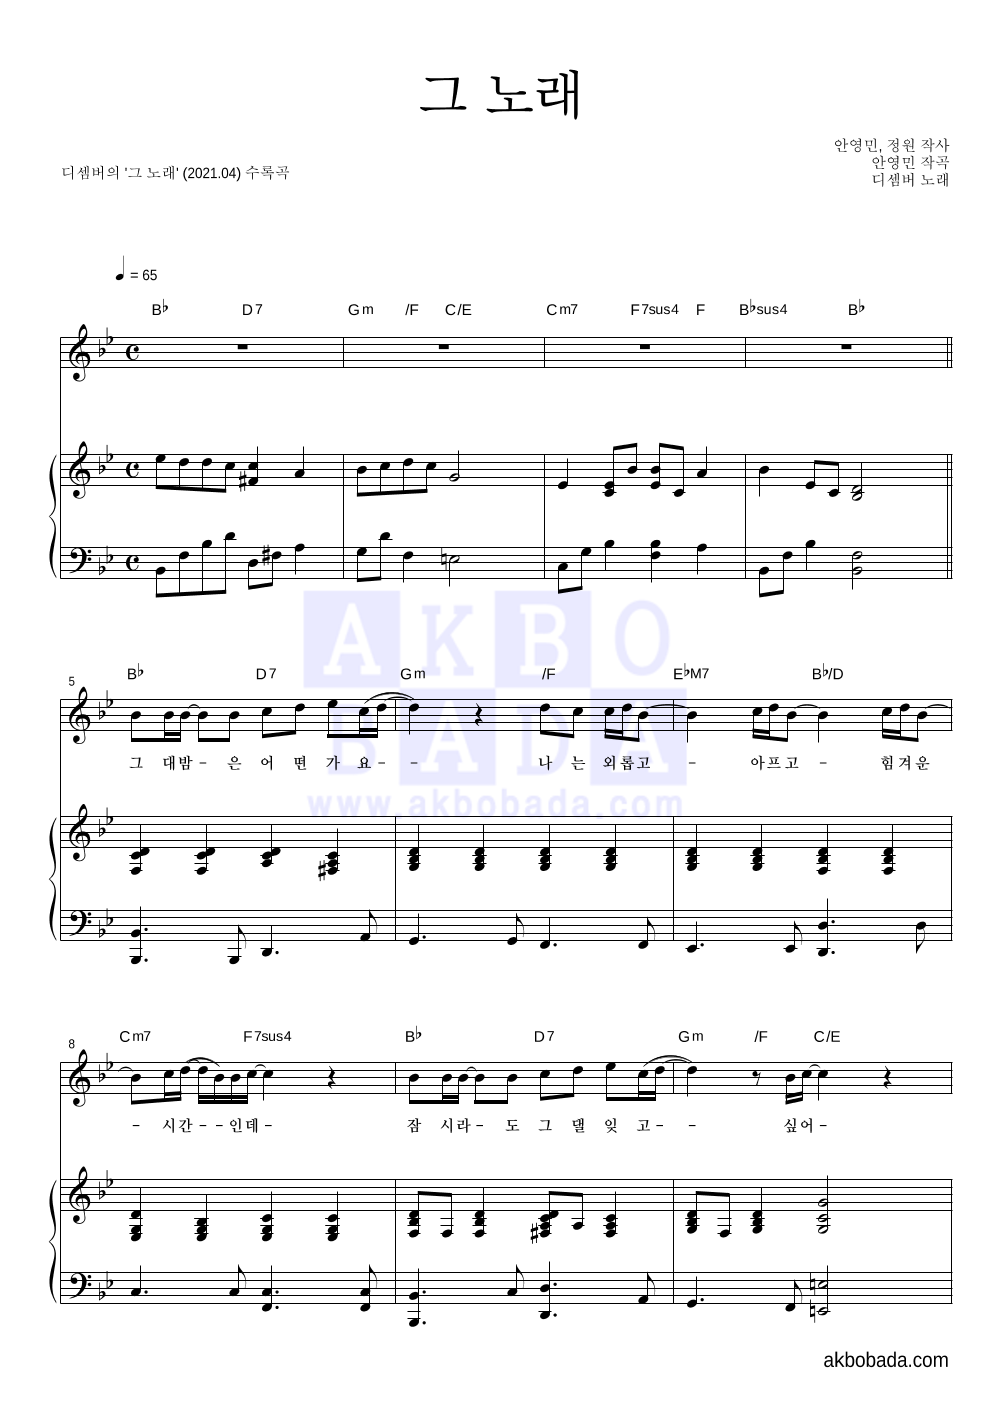 디셈버 - 그 노래 피아노 3단 악보 